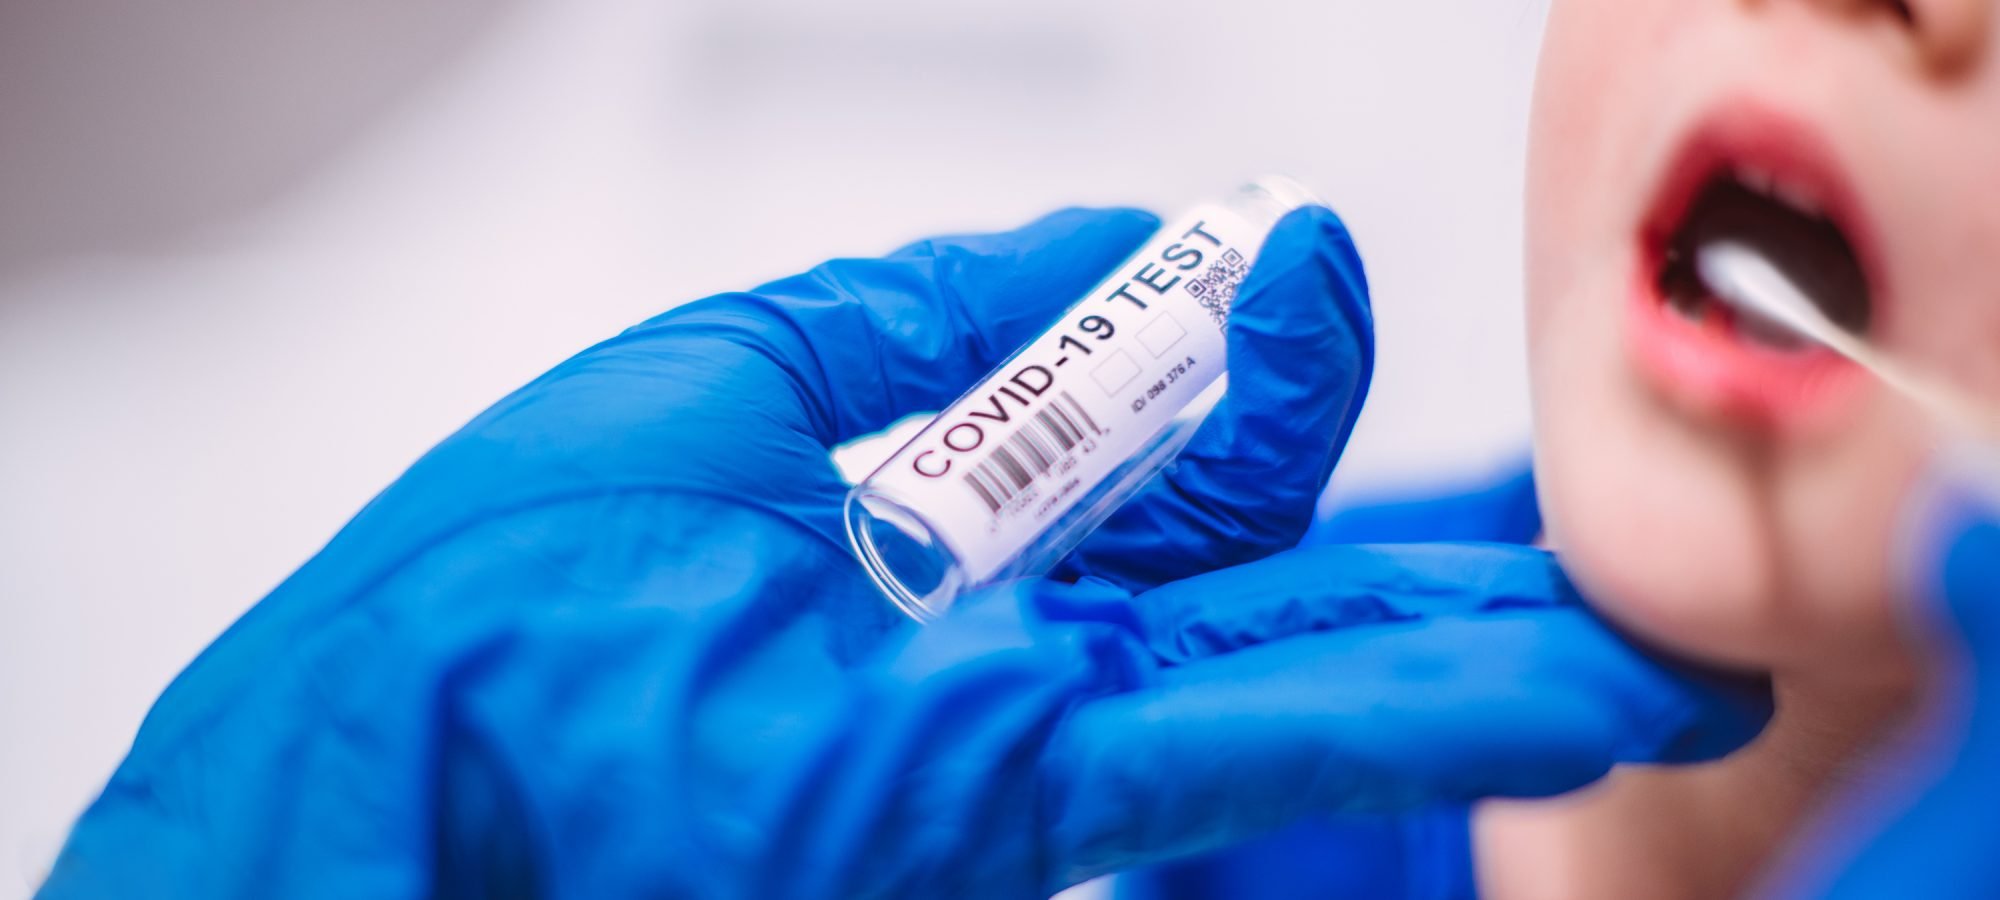 Dr. Reiner Fuellmich: PCR test plan epidemya: Walang corona epidemic, PCR test plan lang epidemya